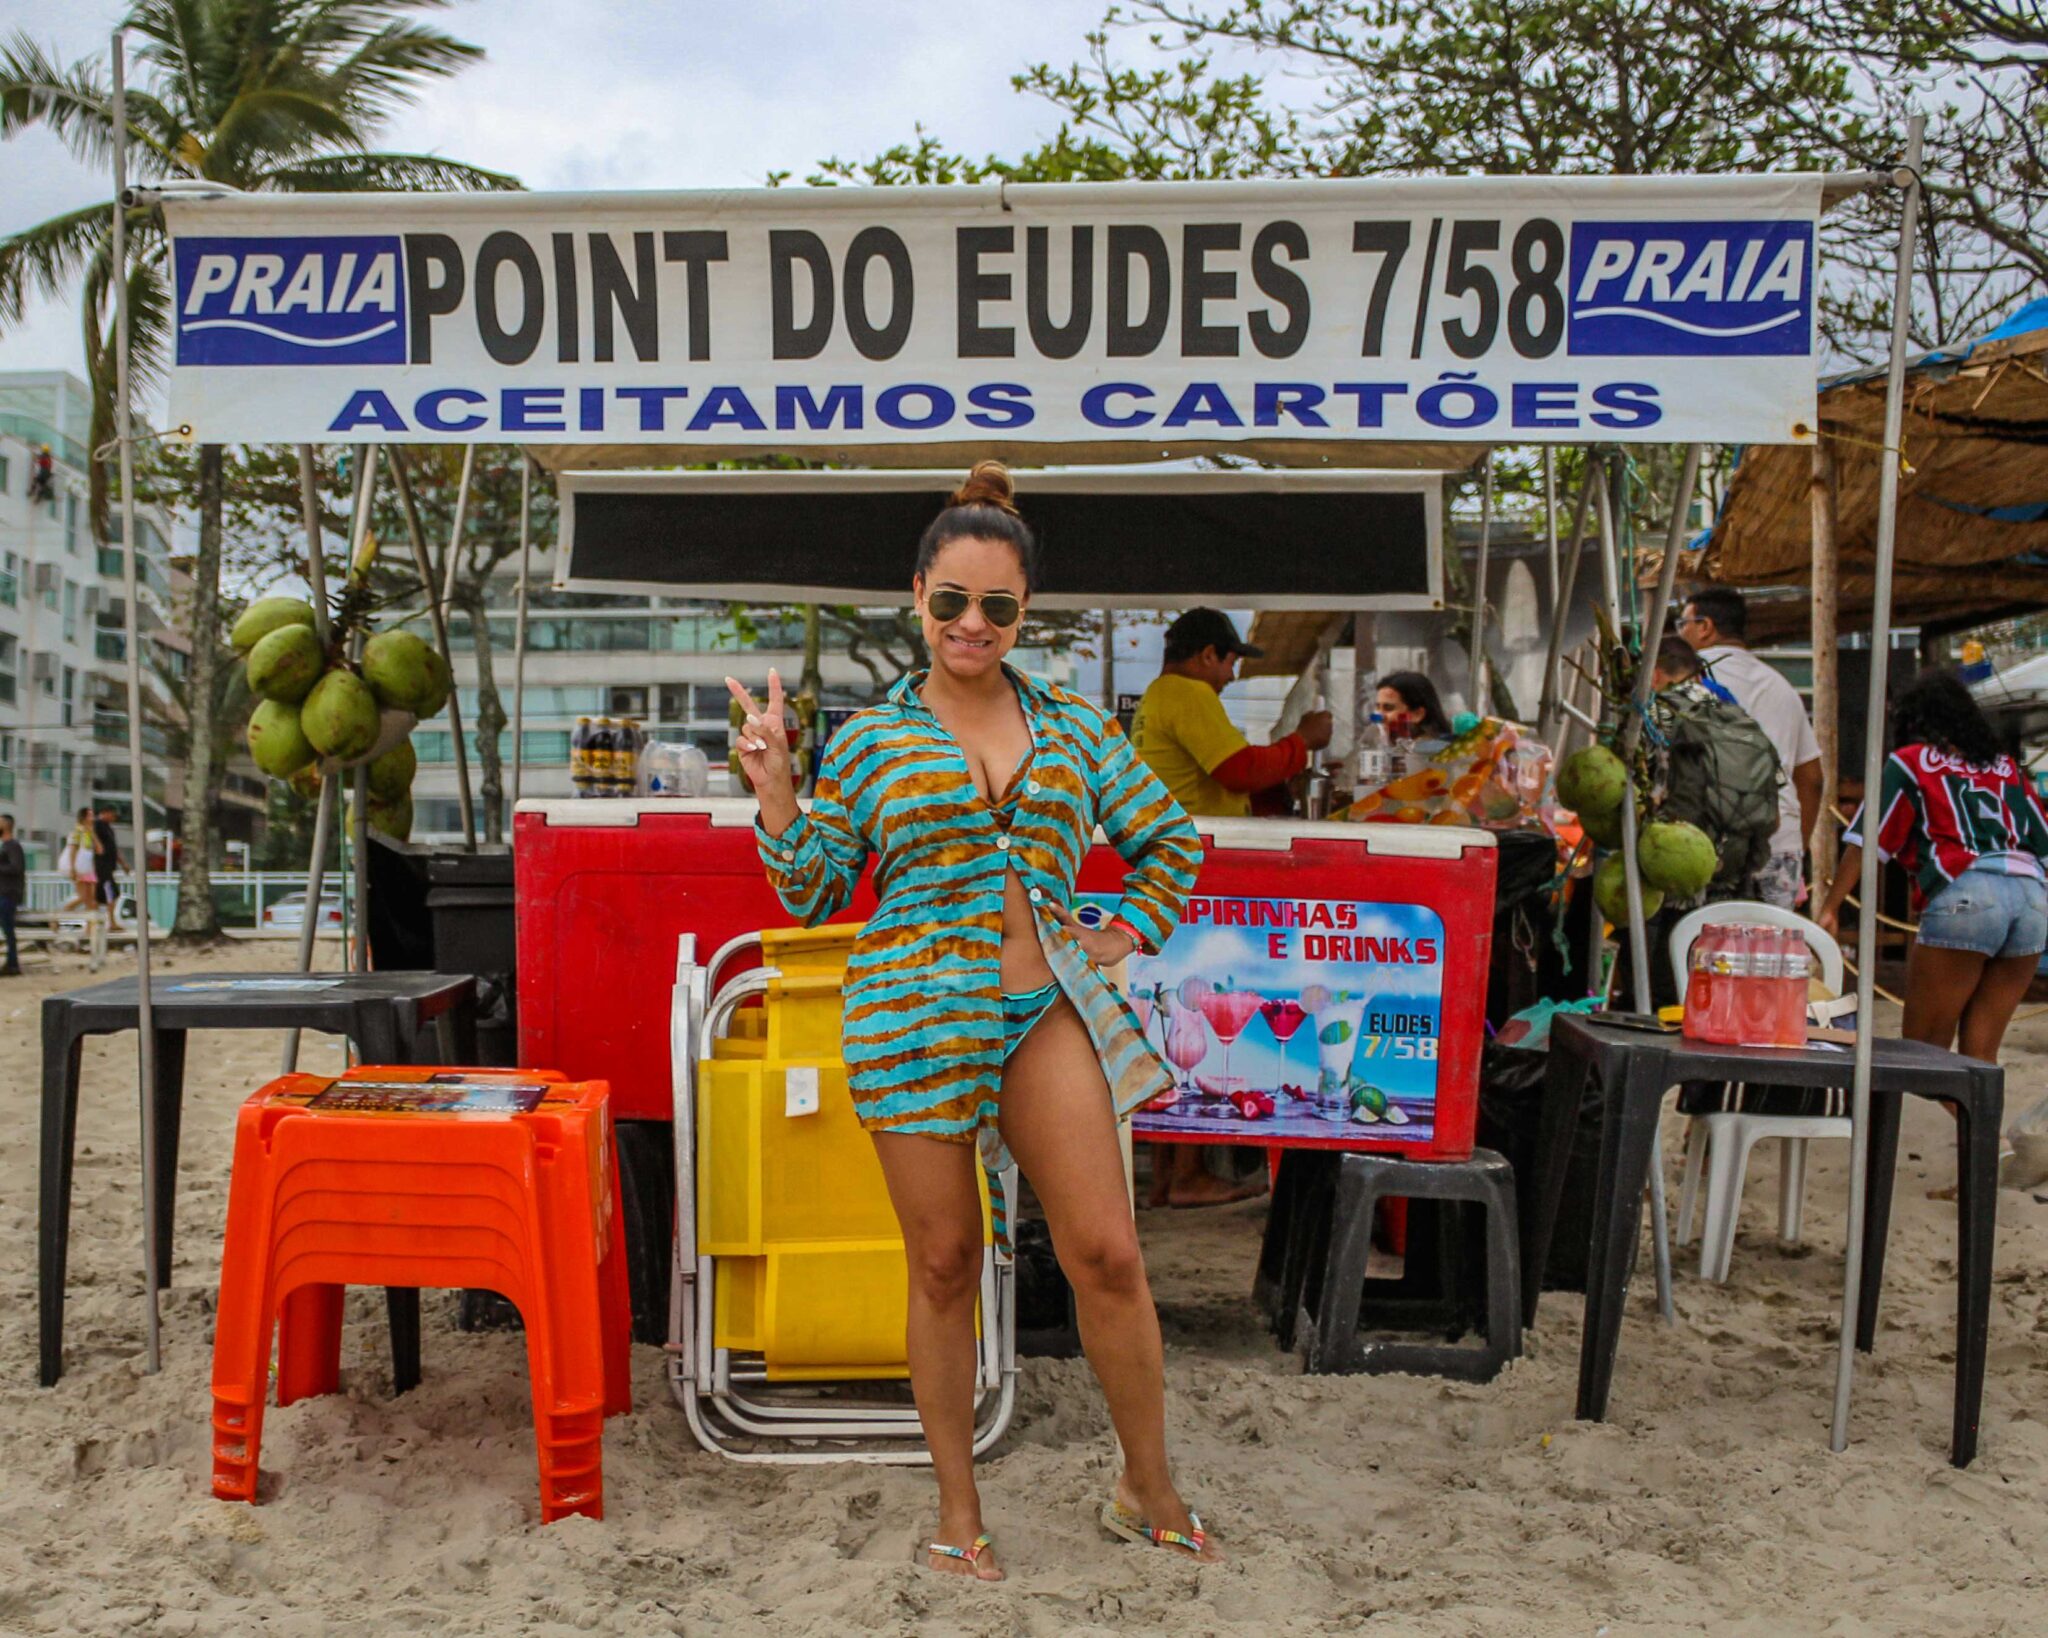 O Point do Eudes é a melhor barraca na Praia da Barra da Tijuca-Posto 2, no Rio de Janeiro, RJ, onde você pode alugar cadeiras de praia, guarda-sol e bola de futevôlei. Nós atendemos turistas e cariocas com excelência há mais de 1 ano na barraca 7/58 da Avenida do Pepê. Oferecemos uma estrutura acolhedora e limpa, além de drinks de alto padrão, como caipirinhas na Taça, 